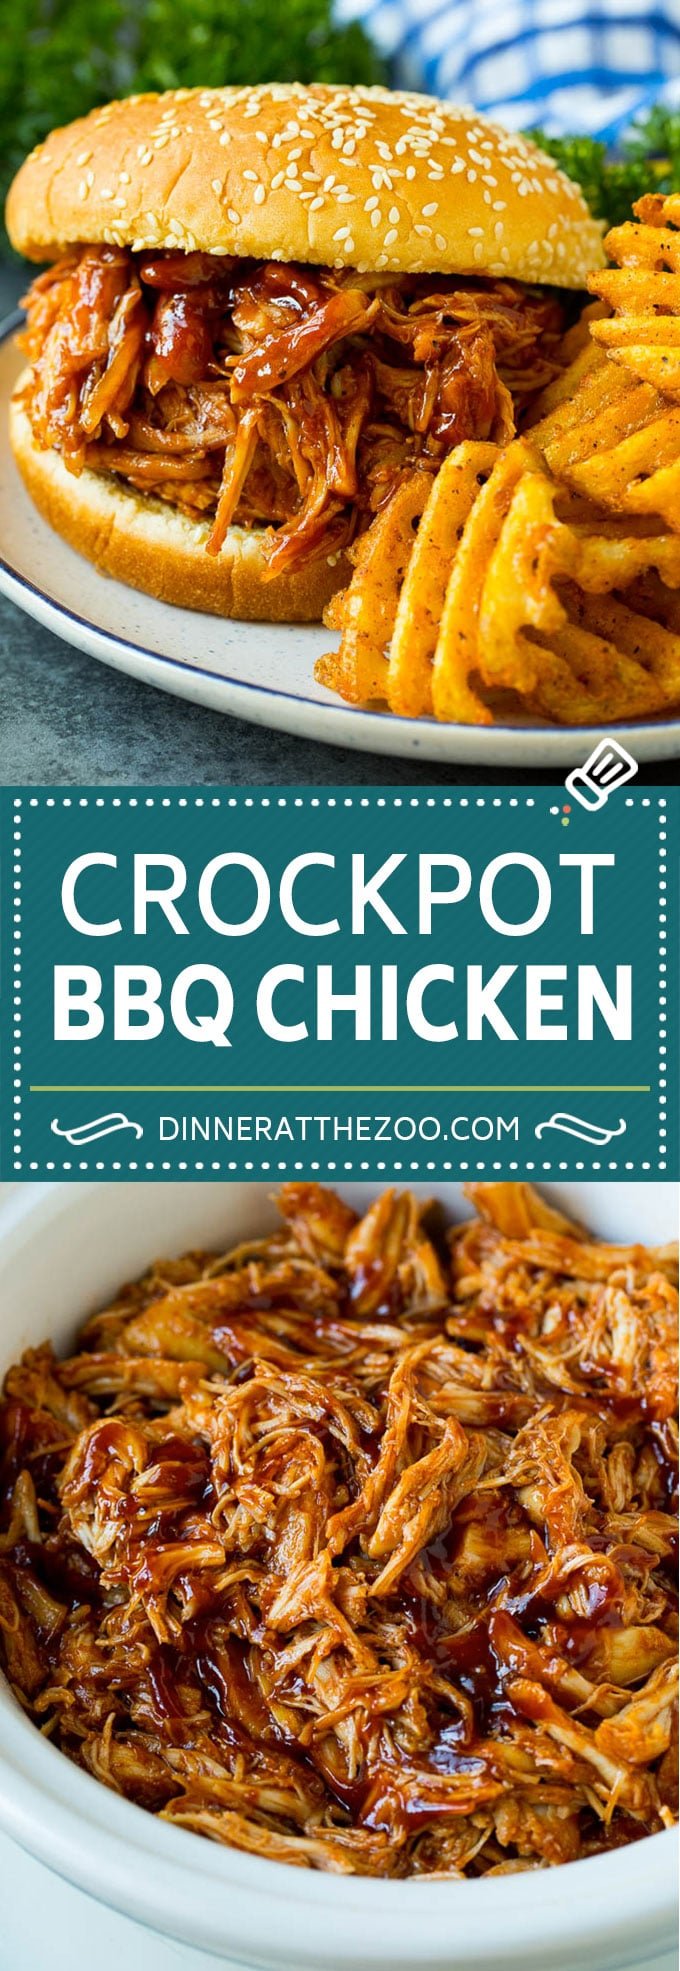 Crockpot BBQ Chicken Recipe | Barbecue Chicken #chicken #bbq #slowcooker #crockpot #dinner #dinneratthezoo